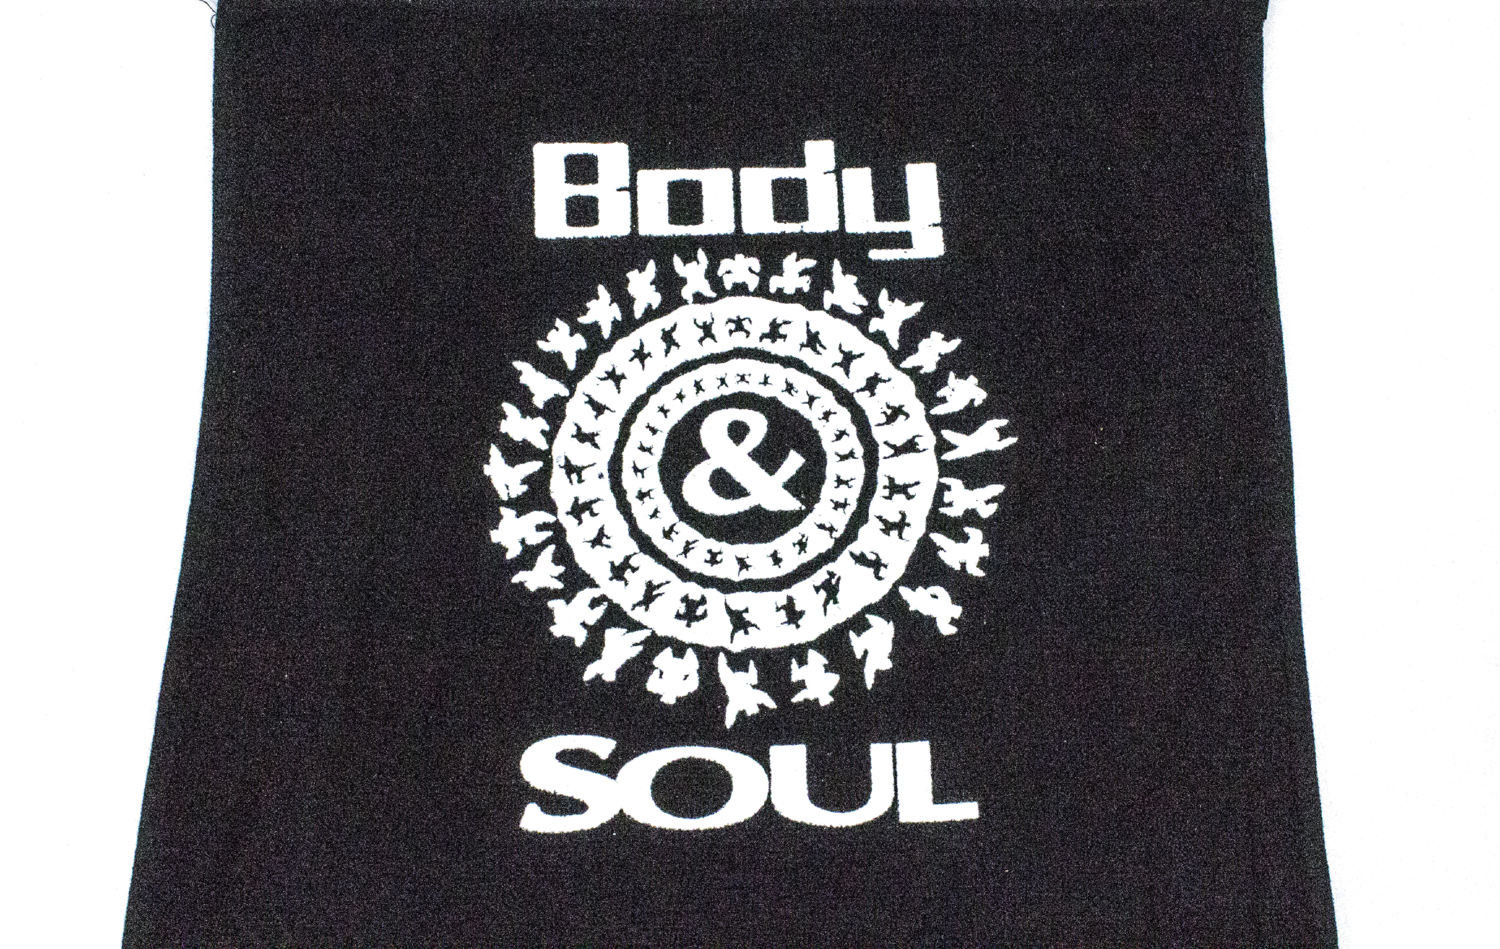 Shop — Body & Soul NYC